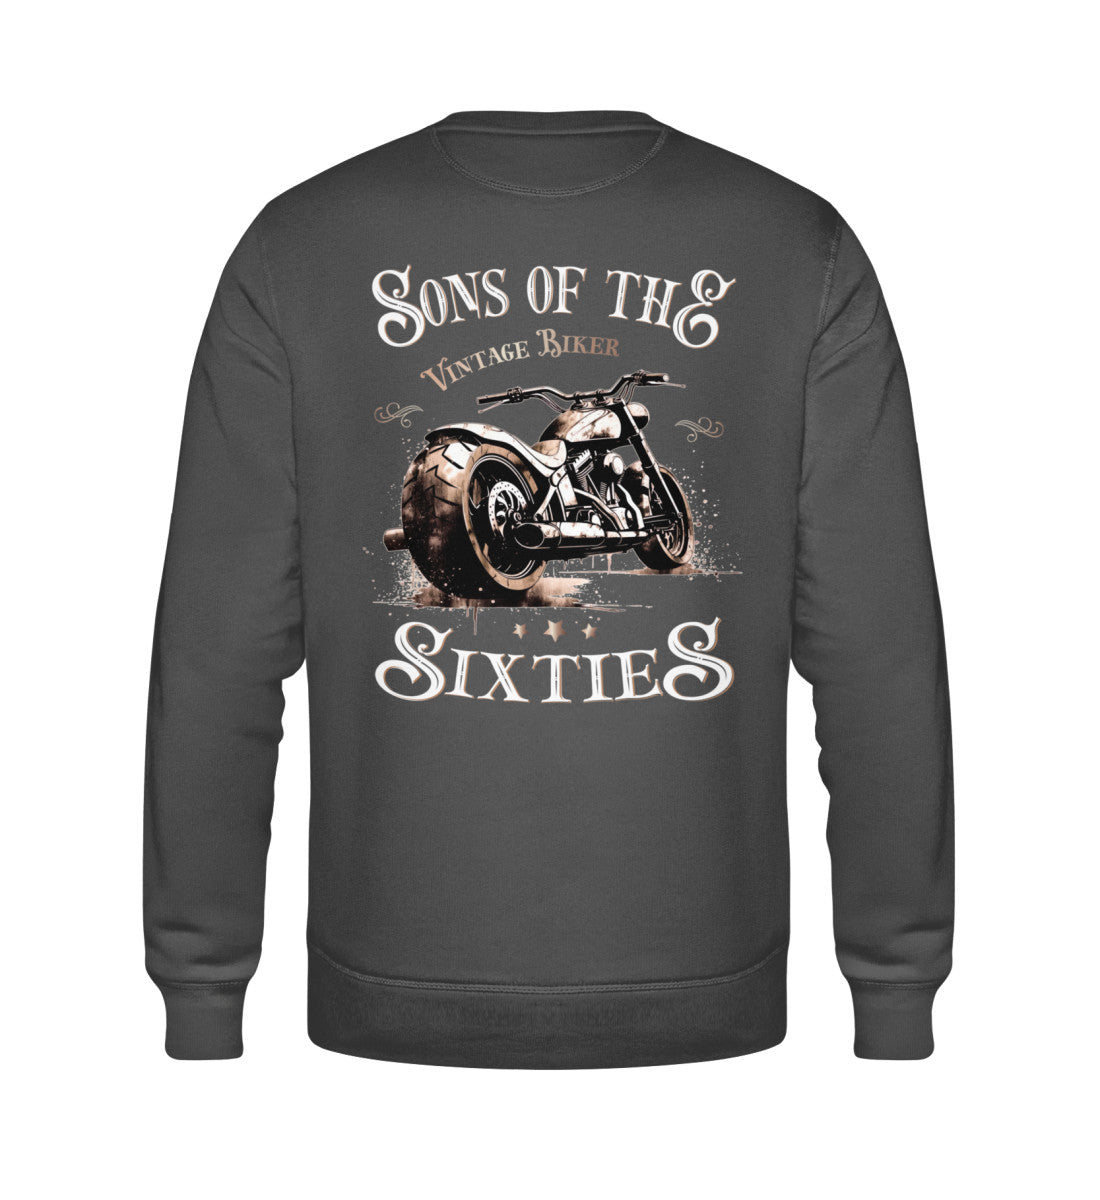 Ein Biker Sweatshirt für Motorradfahrer von Wingbikers mit dem Aufdruck, Sons of the Sixties - Vintage Biker, in dunkelgrau.